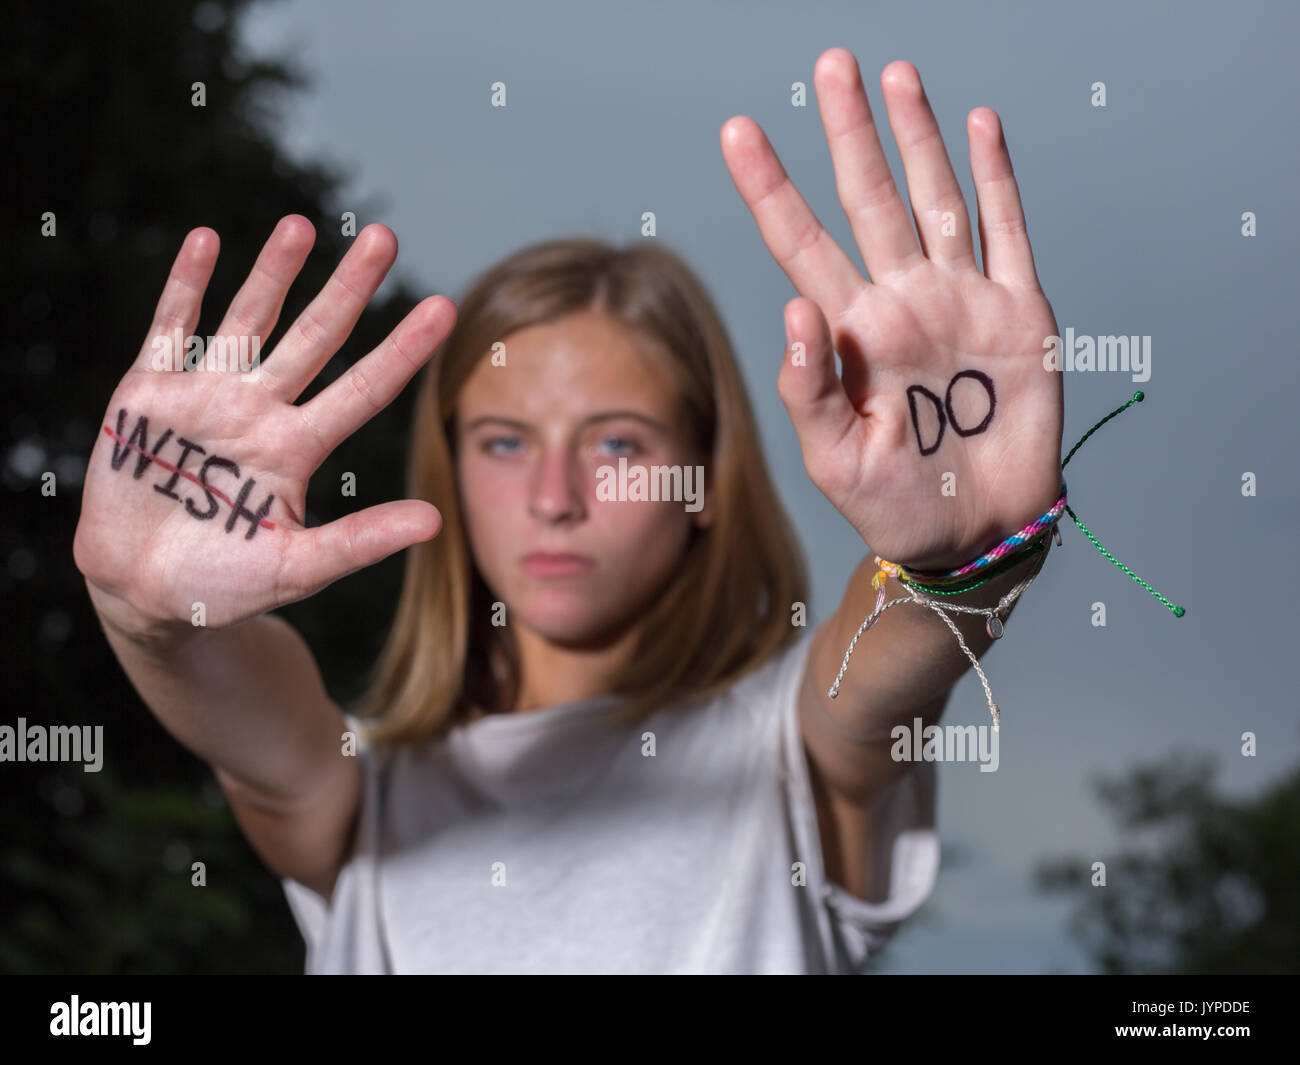 Woman hold up hands avec motivational quotes écrit sur les paumes. Banque D'Images